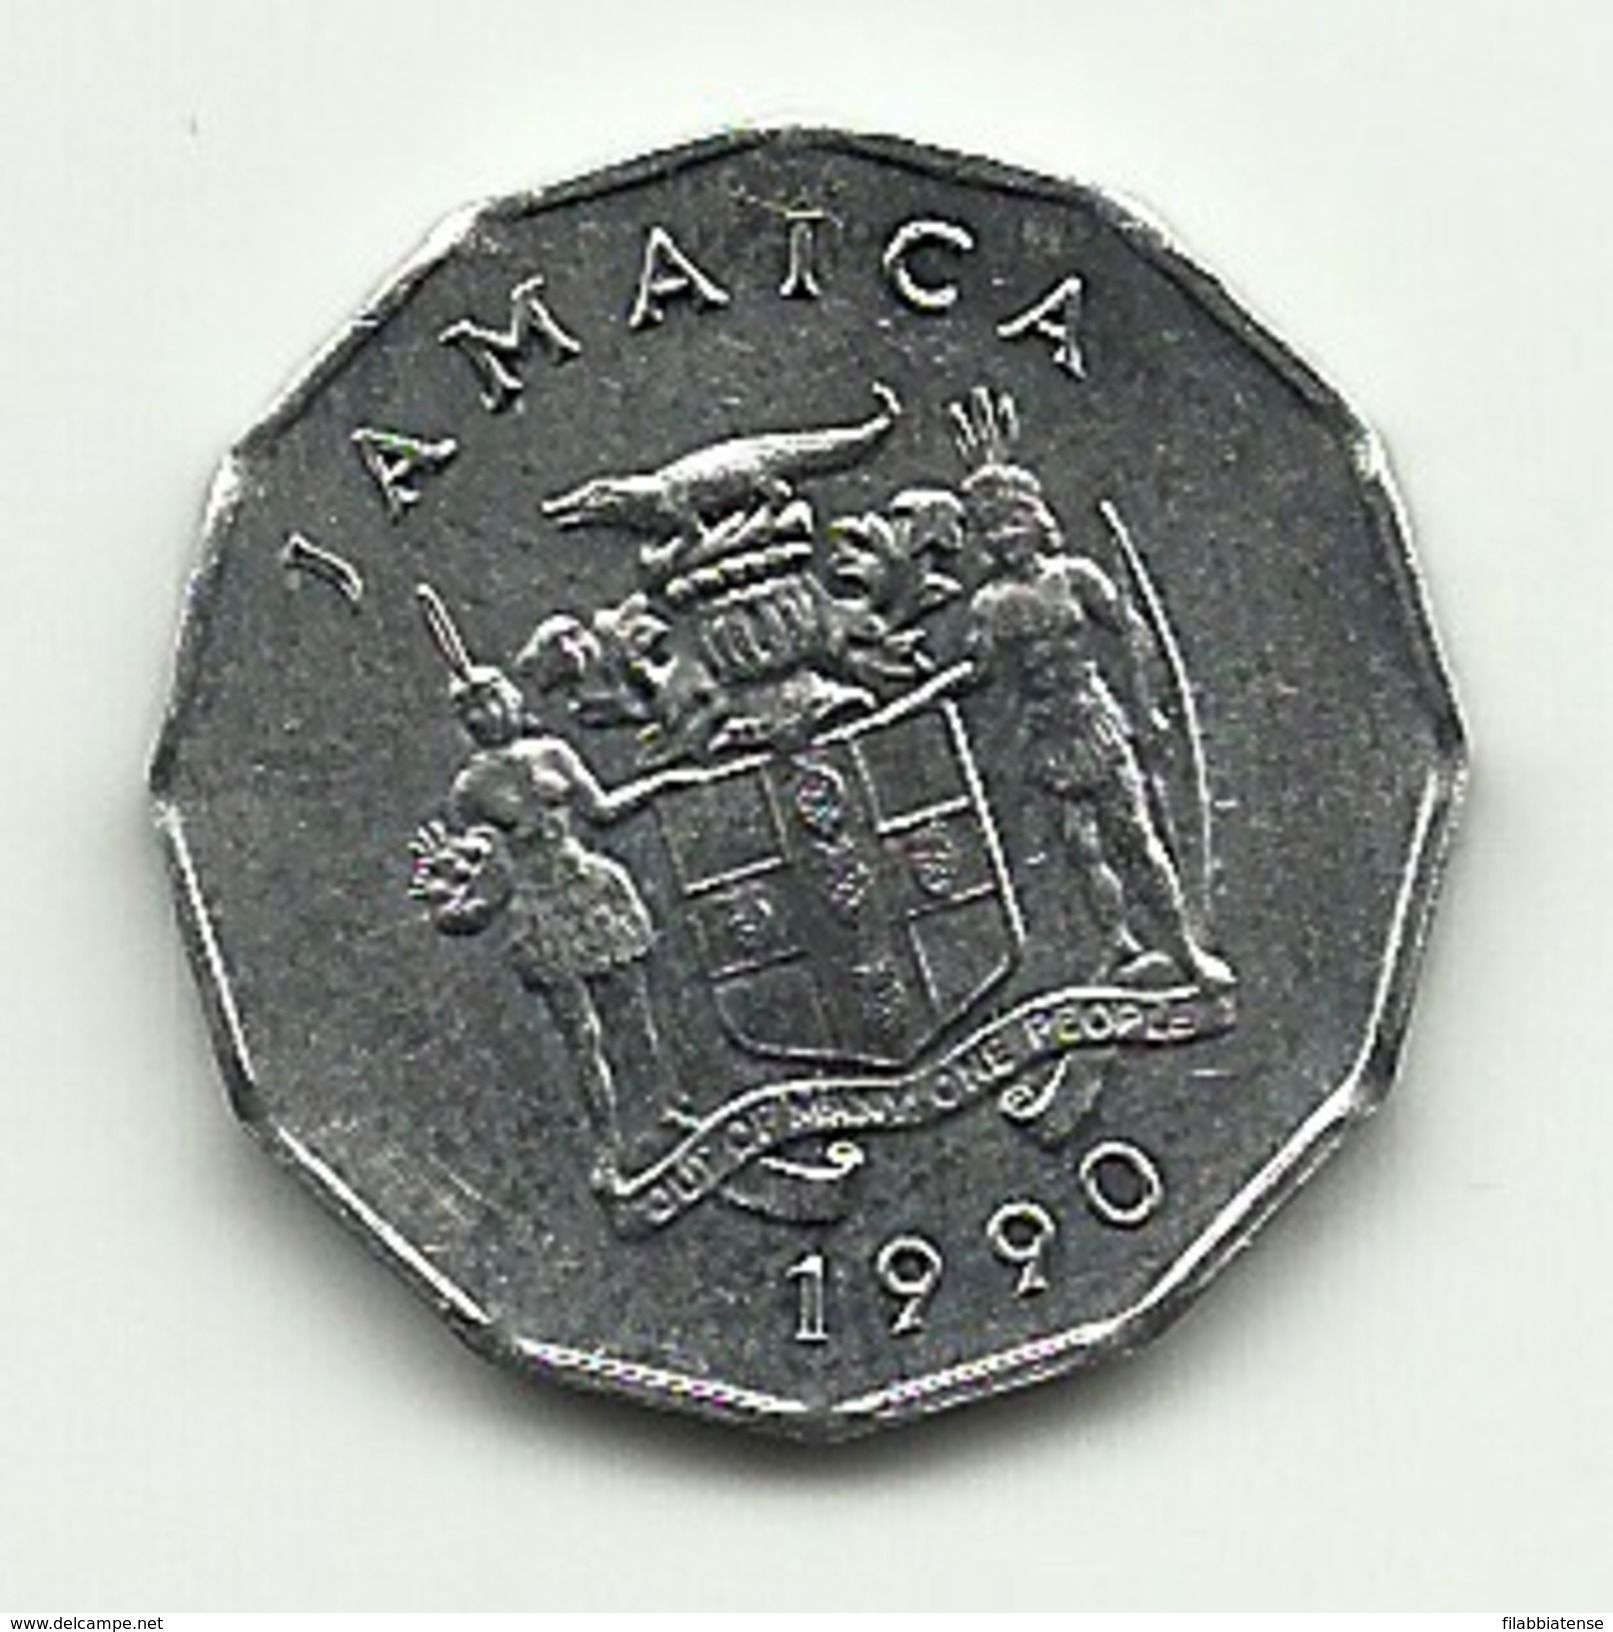 1990 - Jamaica 1 Cent, - Jamaique